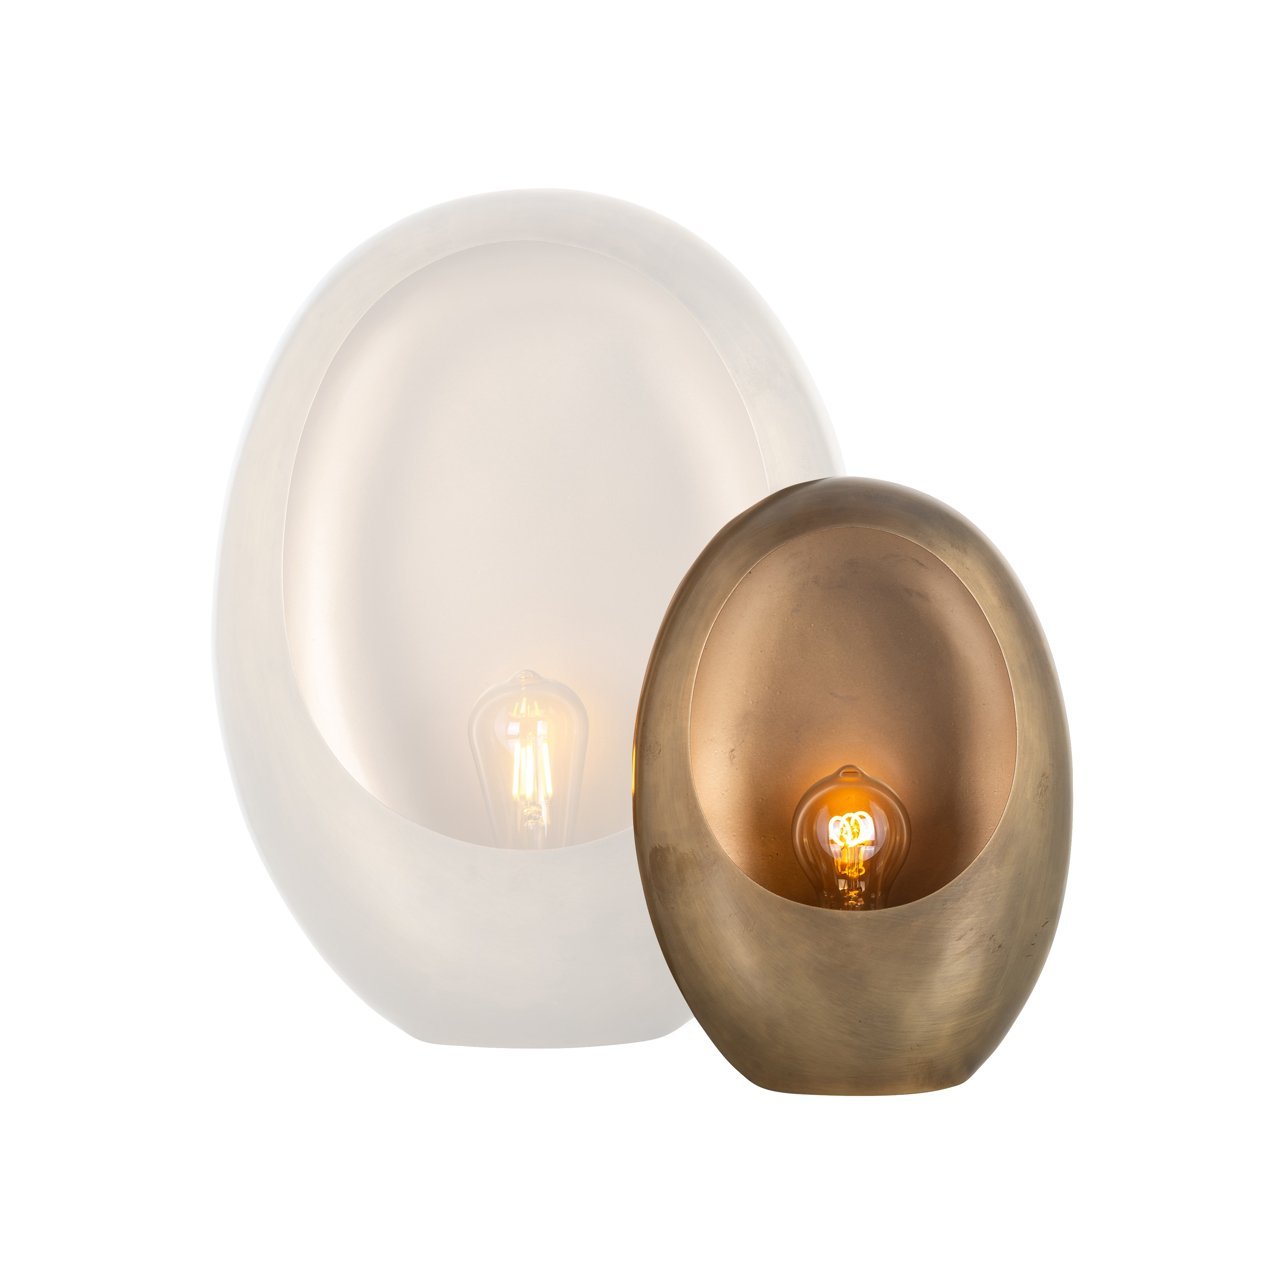 Moderne eivormige lamp met een luxe gouden afwerking